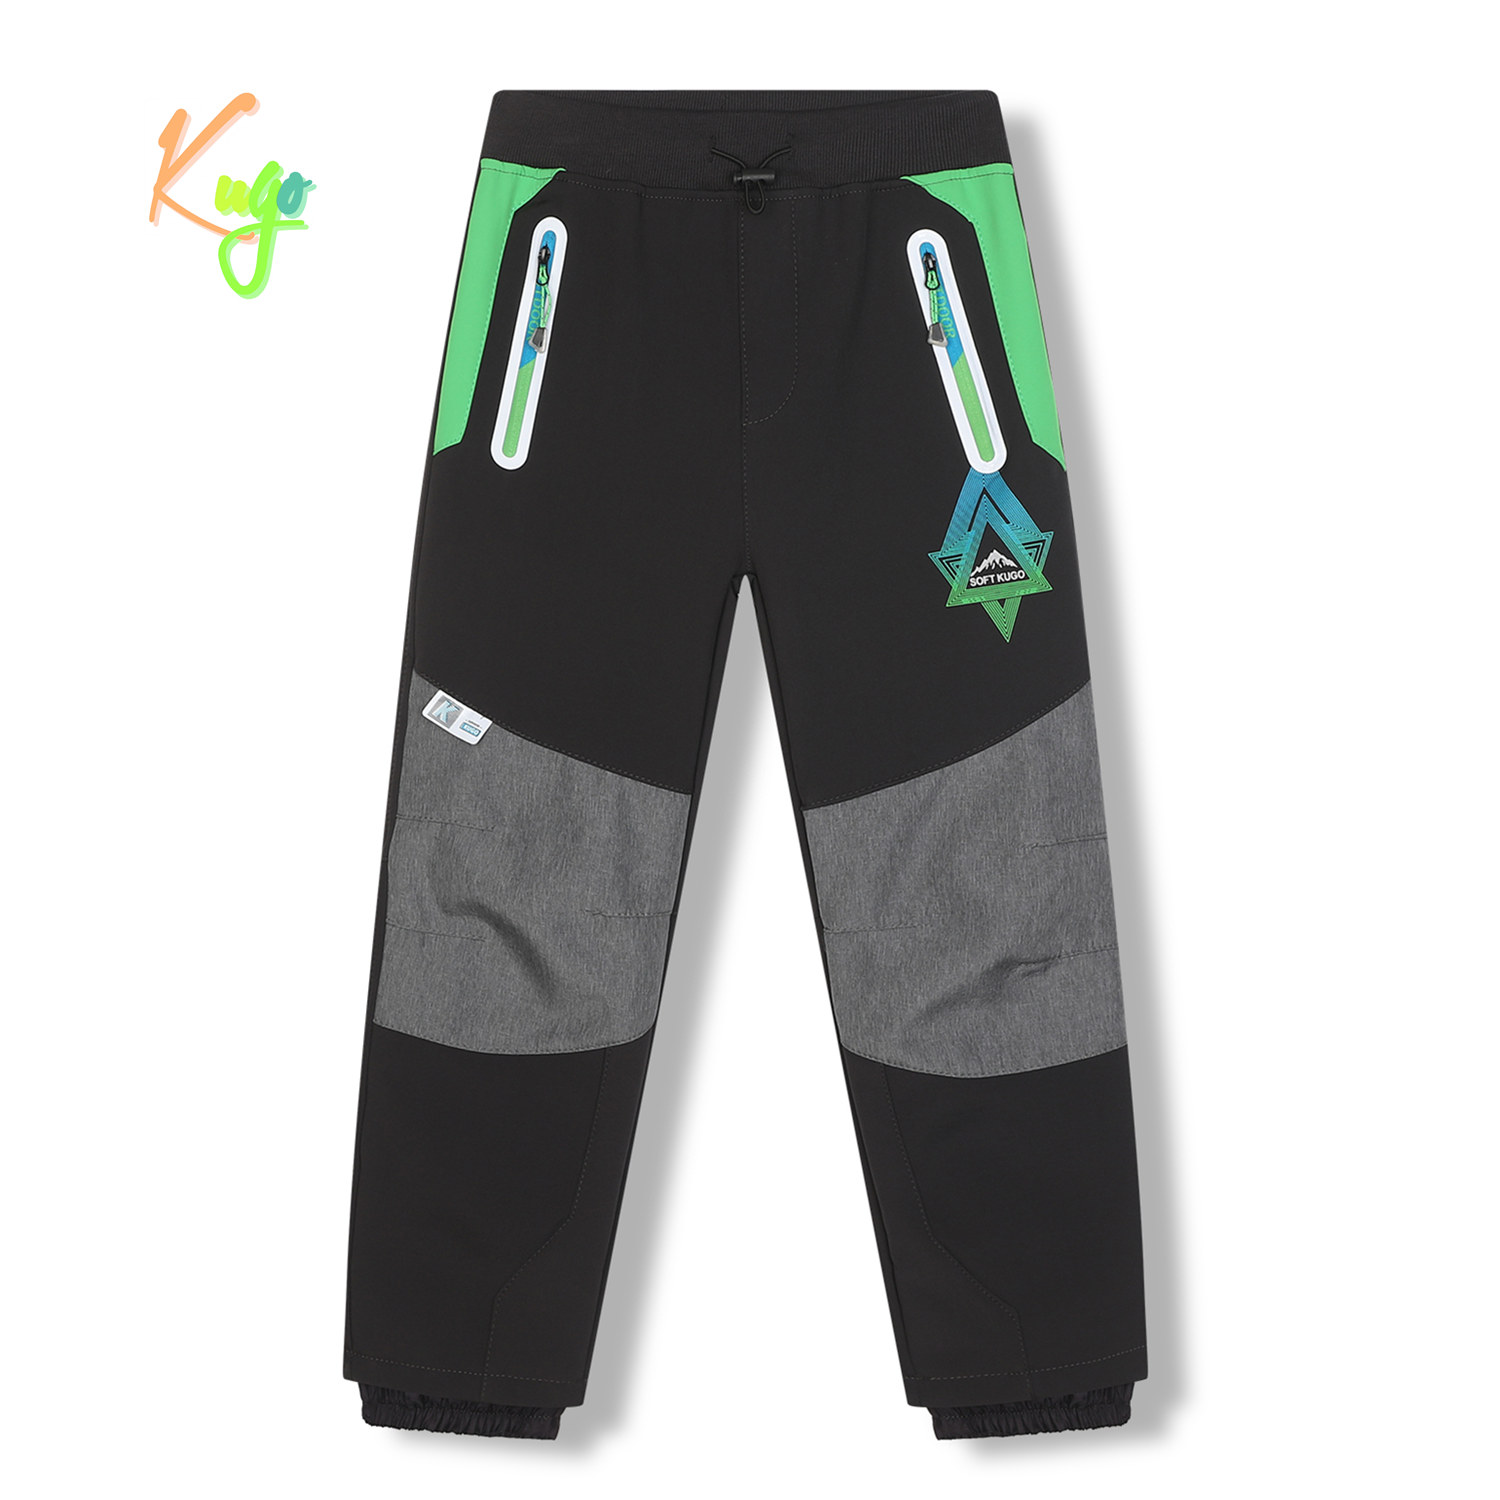 Chlapecké softshellové kalhoty, zateplené - KUGO HK5620, tmavě šedá / zelená aplikace Barva: Šedá, Velikost: 140